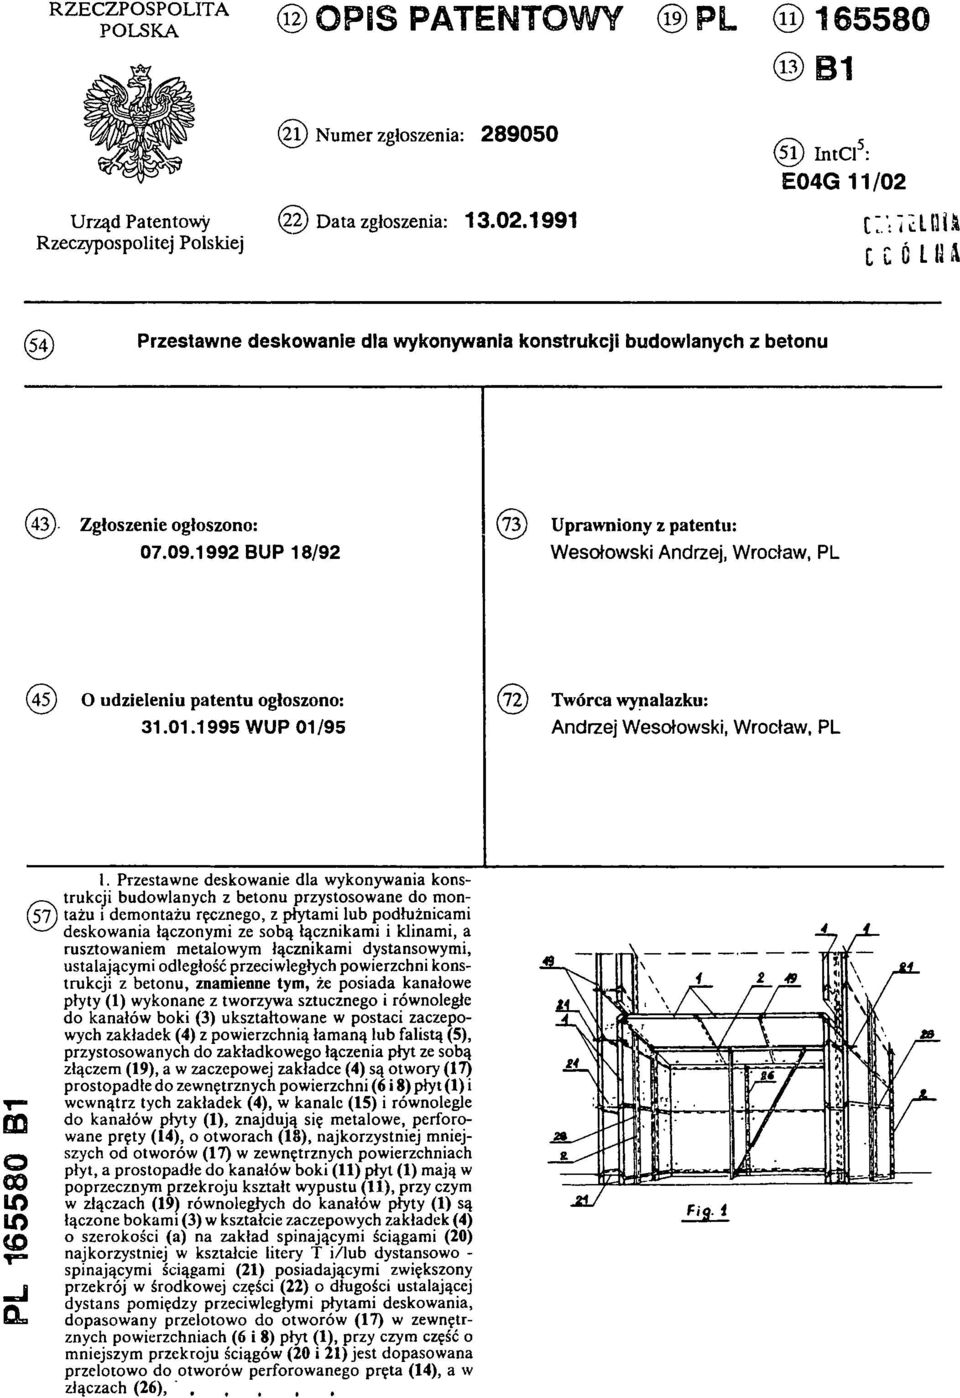 1992 BUP 18/92 (73)Uprawniony z patentu: Wesołowski Andrzej, Wrocław, PL (45) O udzieleniu patentu ogłoszono: 31.01.